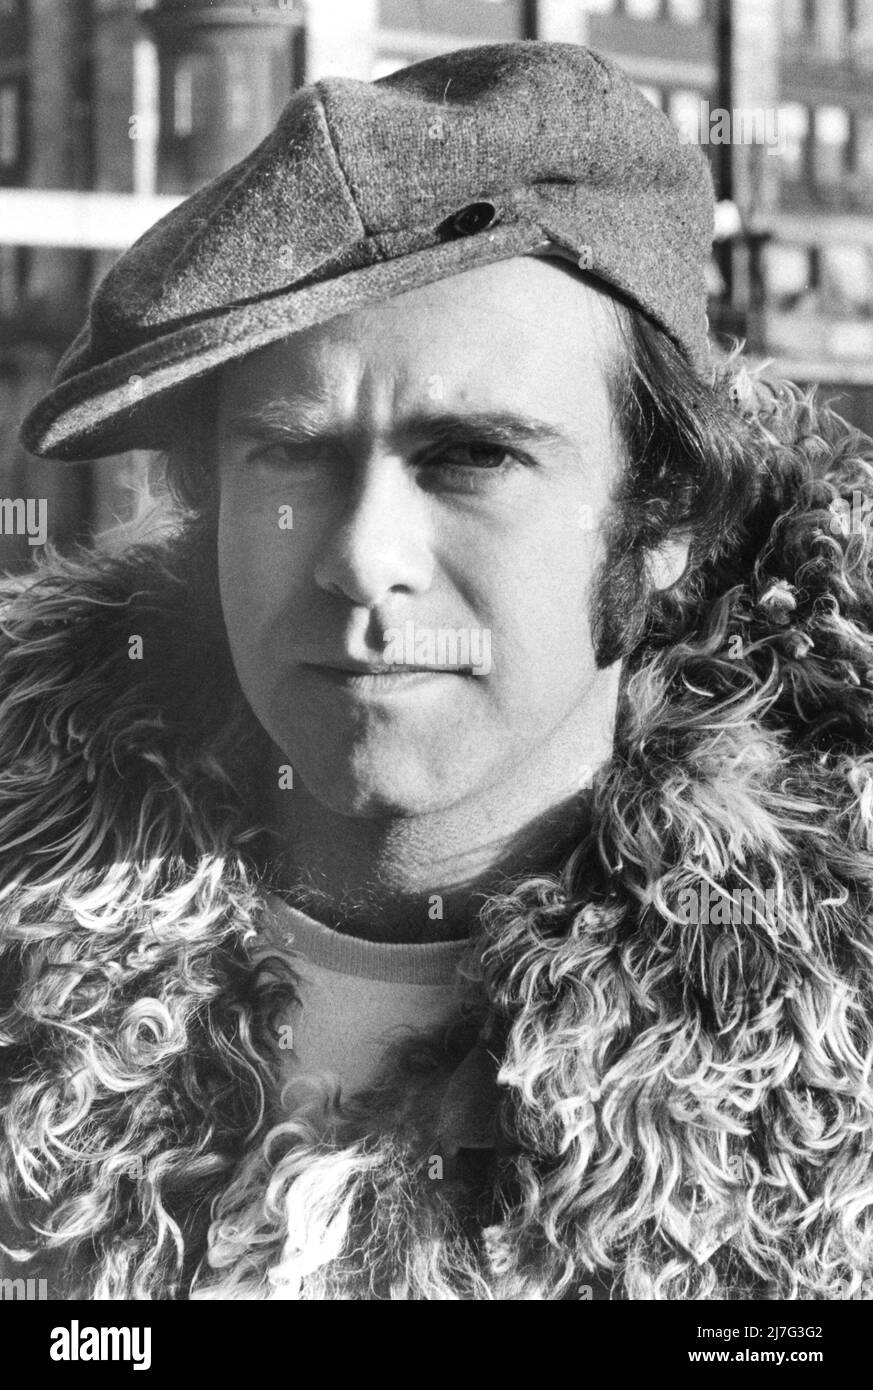 Elton John. Cantante inglese, cantautore nato nel marzo 25 1947. Foto durante una visita in Svezia 1978 Foto Stock